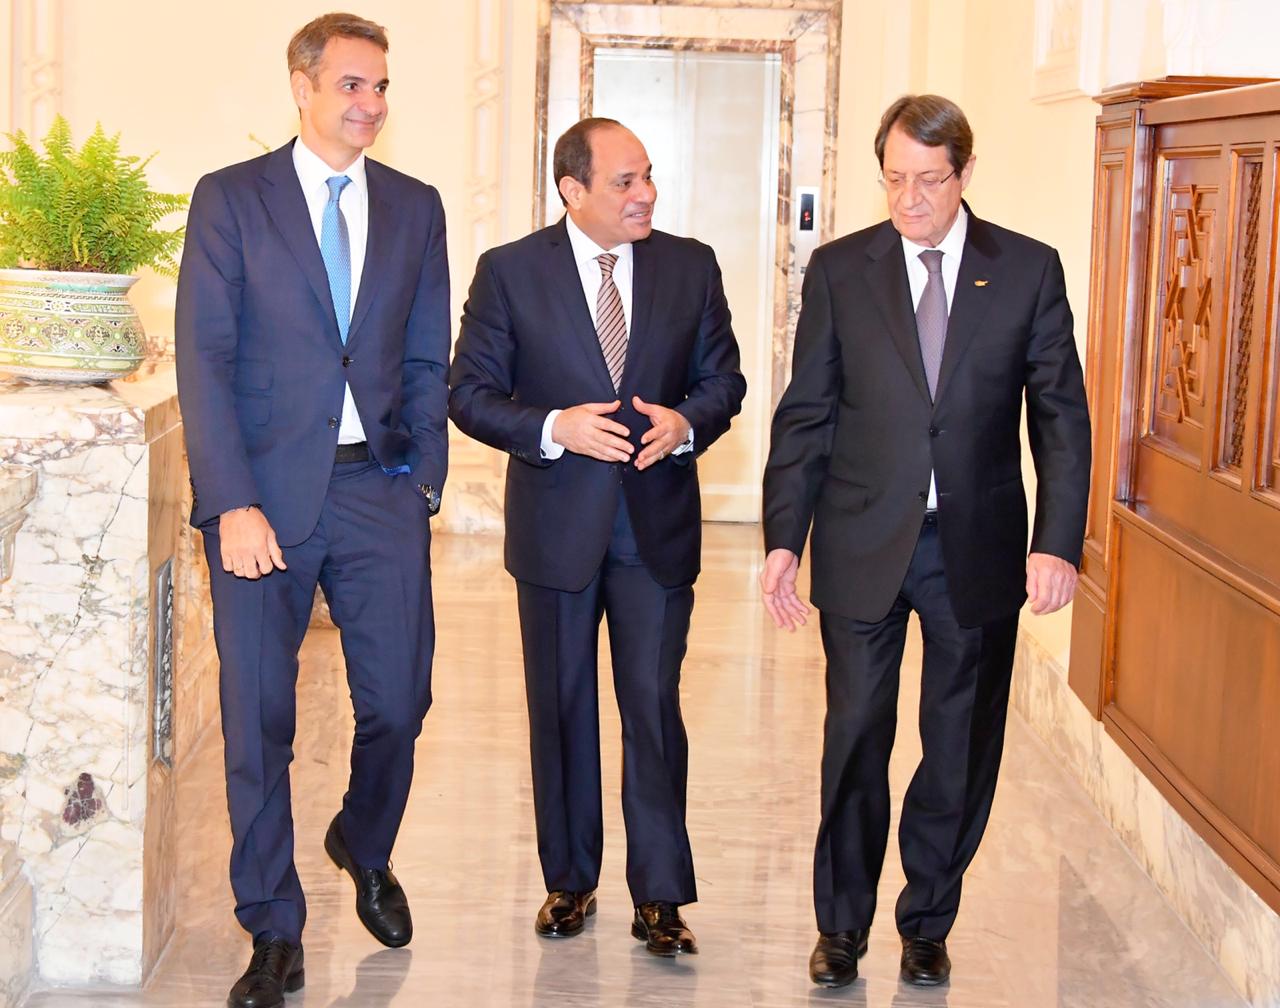 الرئيس السيسي يتوسط كيرياكوس ميتسوتاكيس رئيس وزراء اليونان وونيكوس أناستاسيازيس رئيس جمهورية قبرص